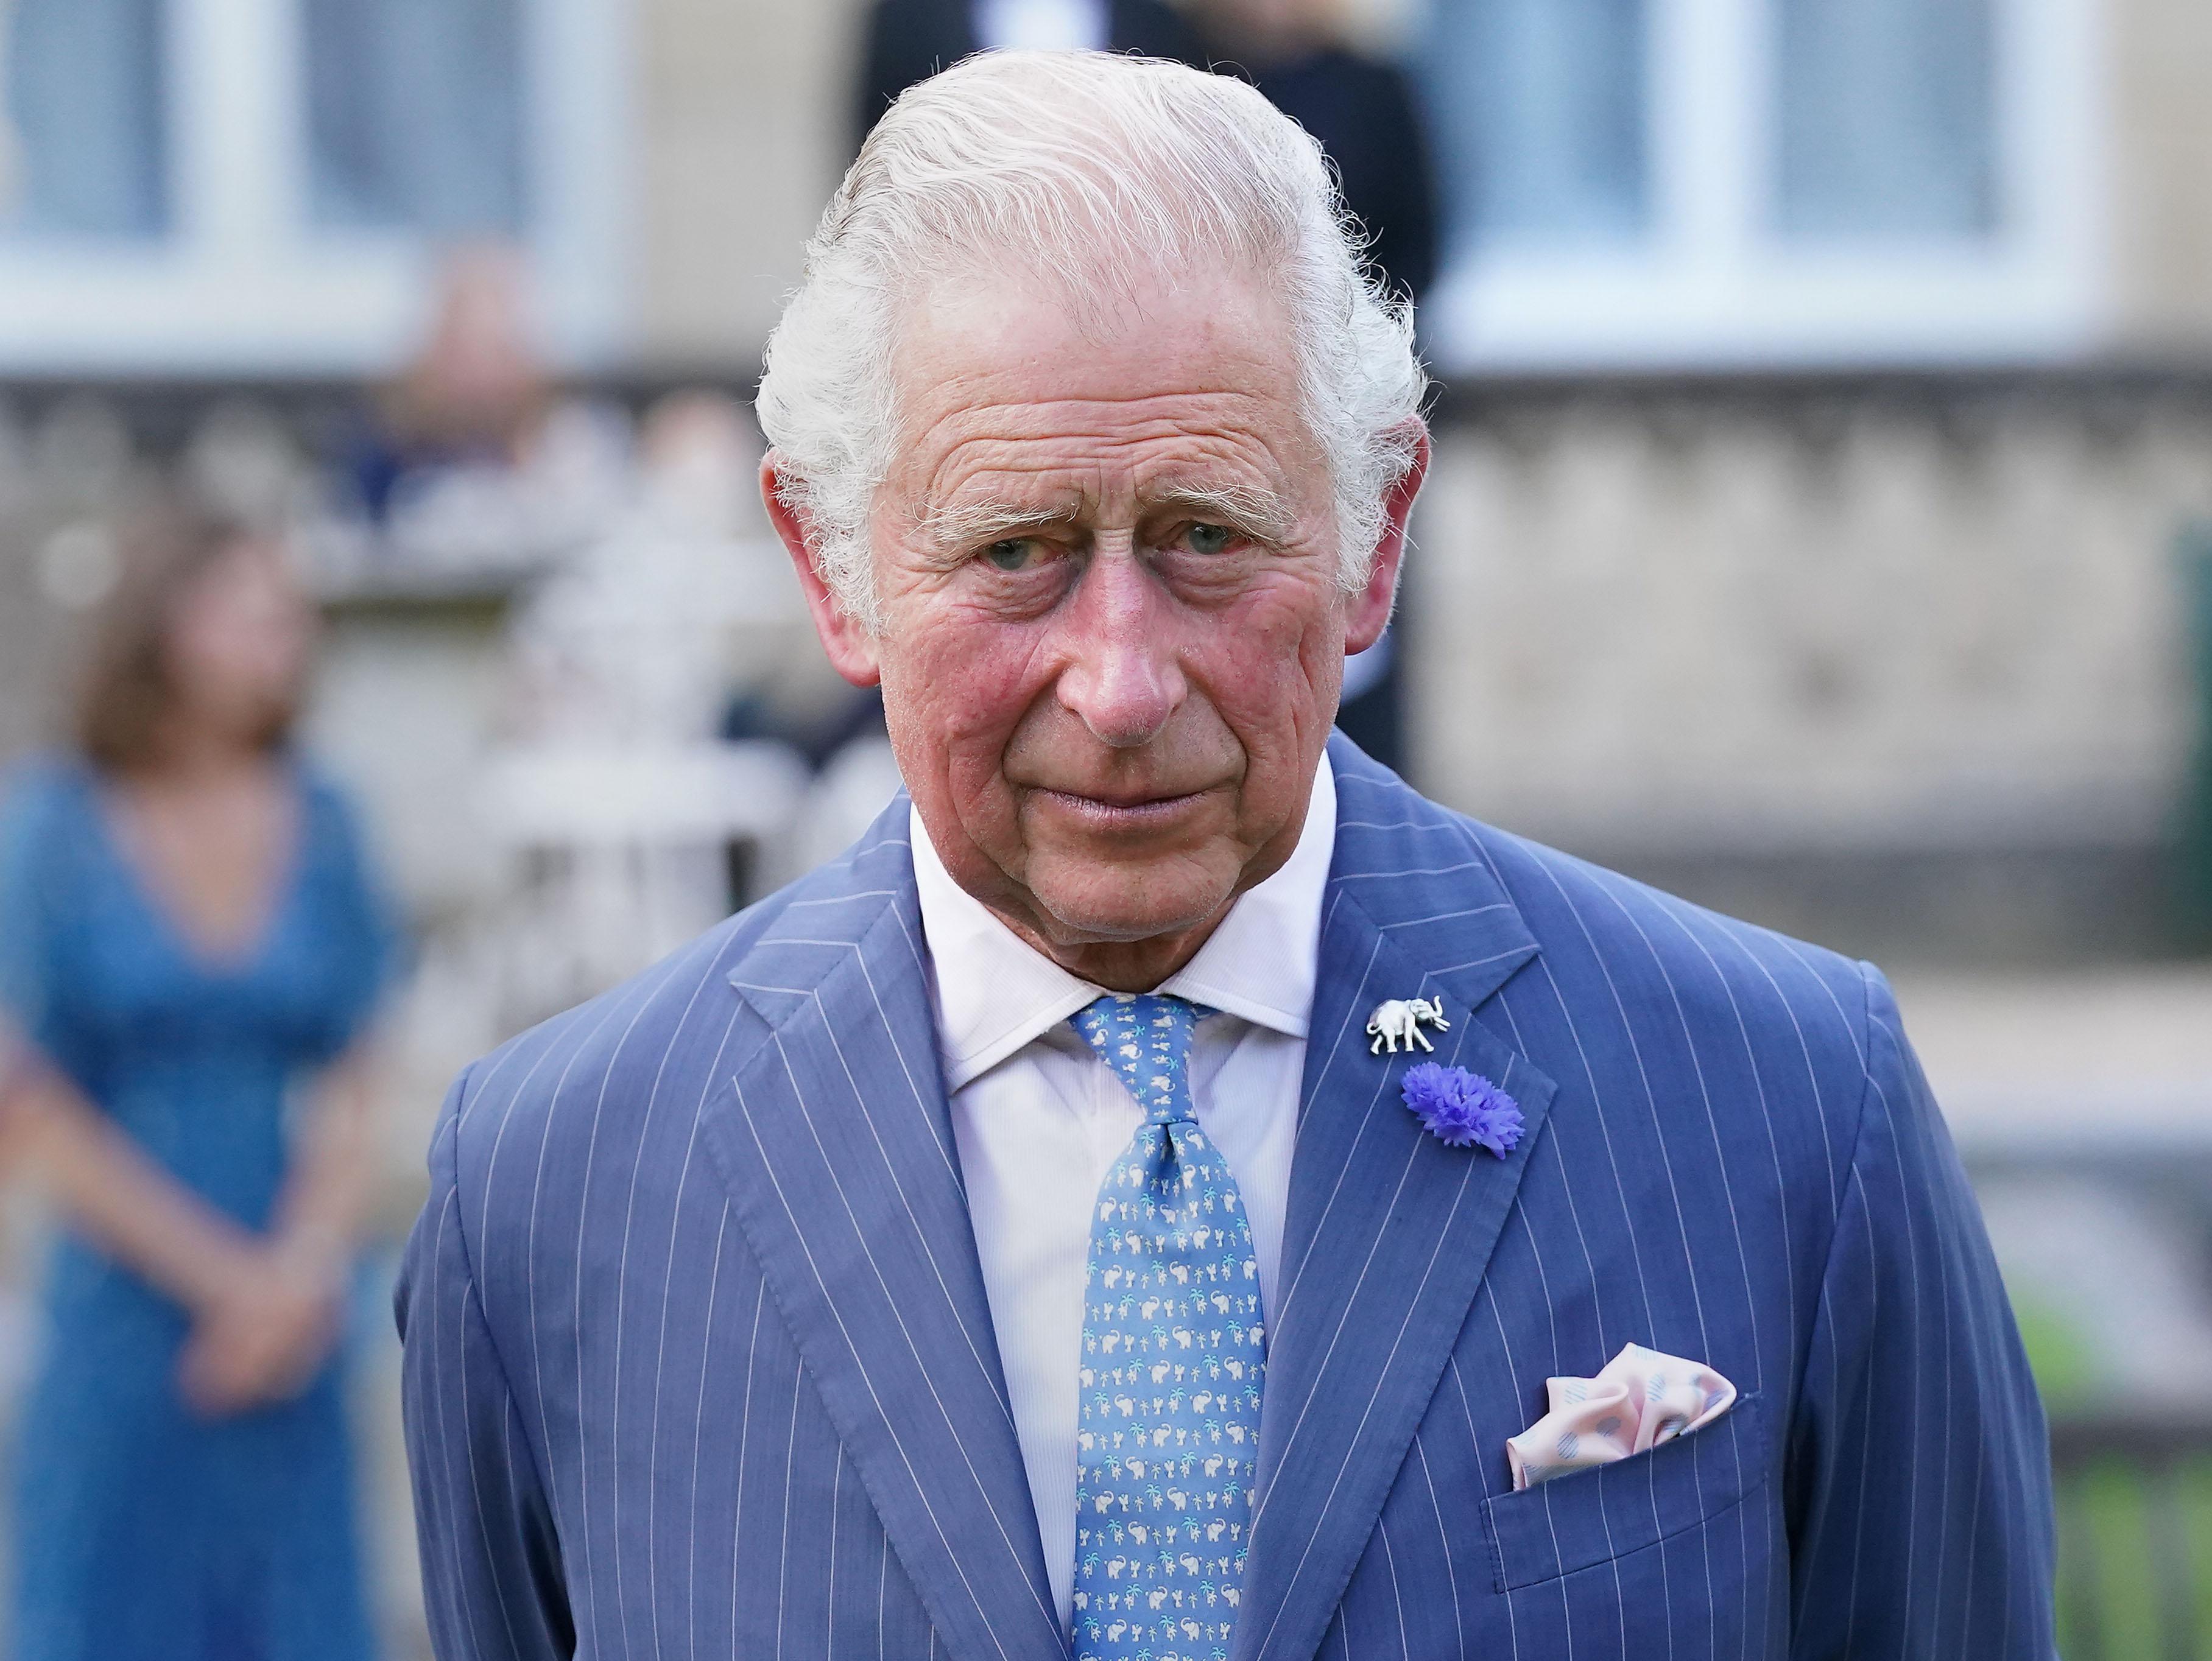 Regele Charles al III-lea, încoronat azi la Londra. Ceremonia istorică va fi transmisă într-o ediţie specială Observator, pe Antena 1